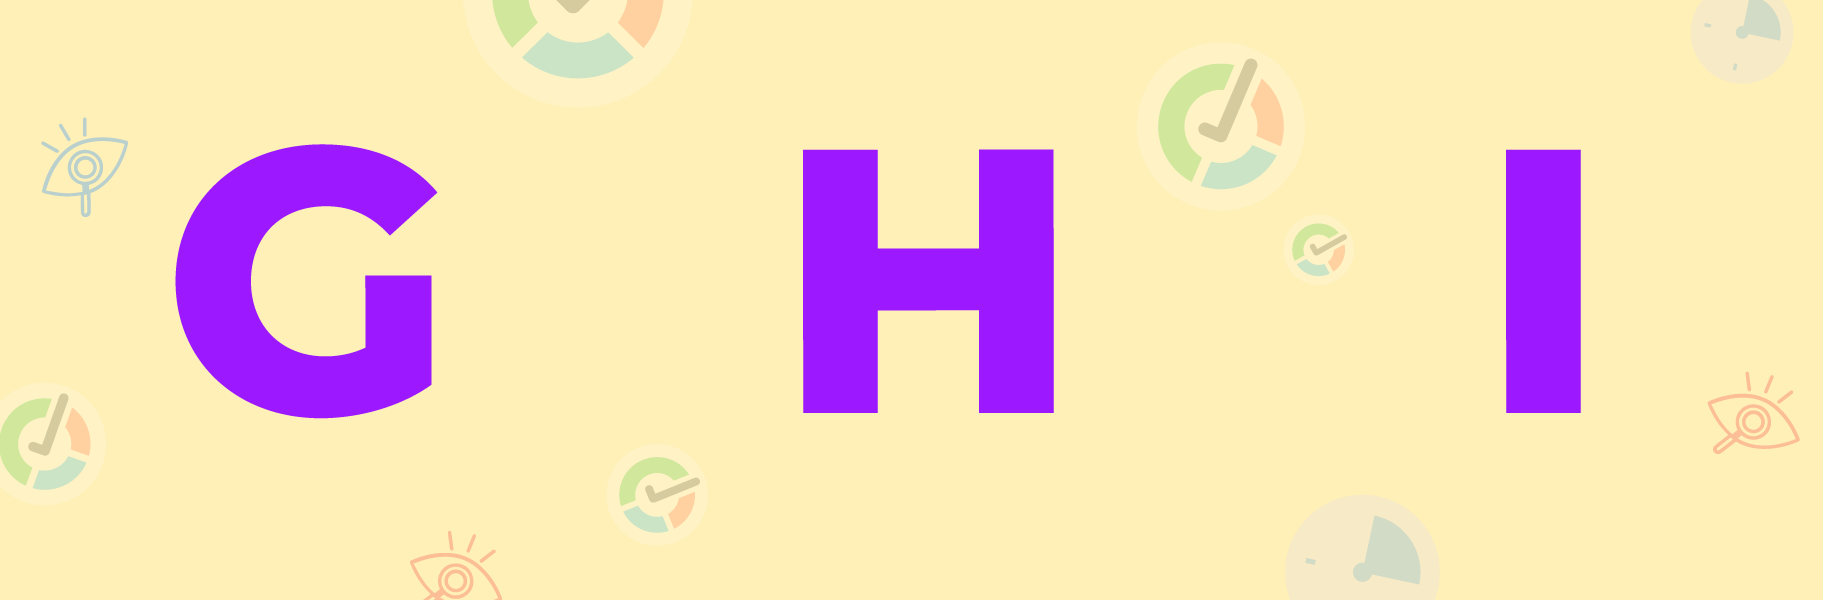 g h i letters image 